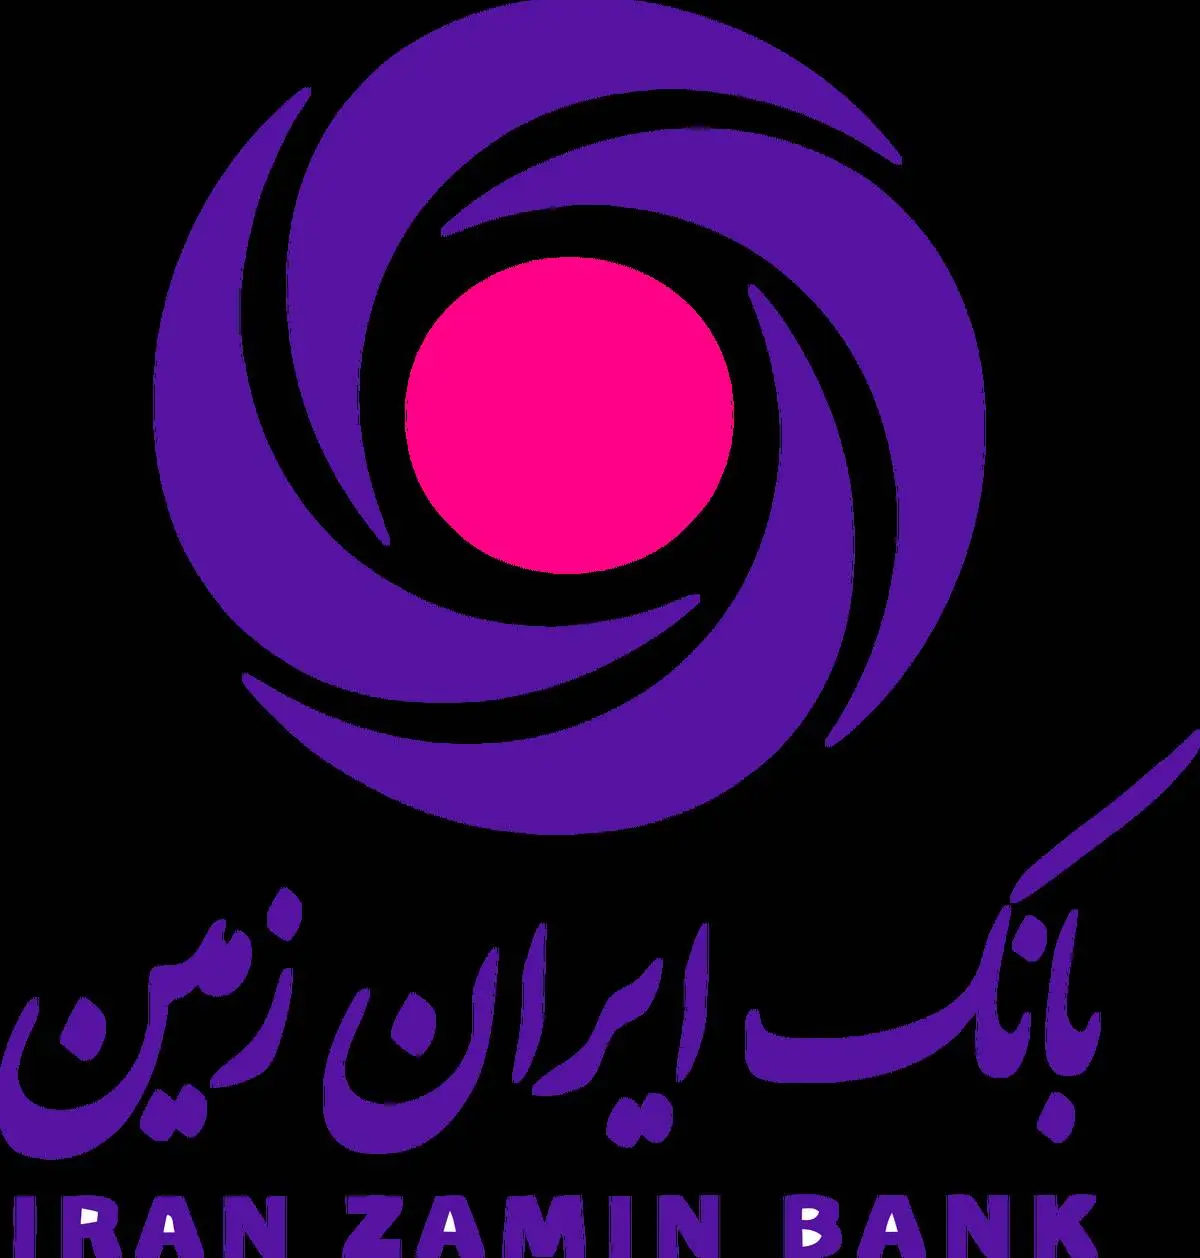 مسئولیت اجتماعی بانک ایران زمین با رویکرد توسعه پایدار
